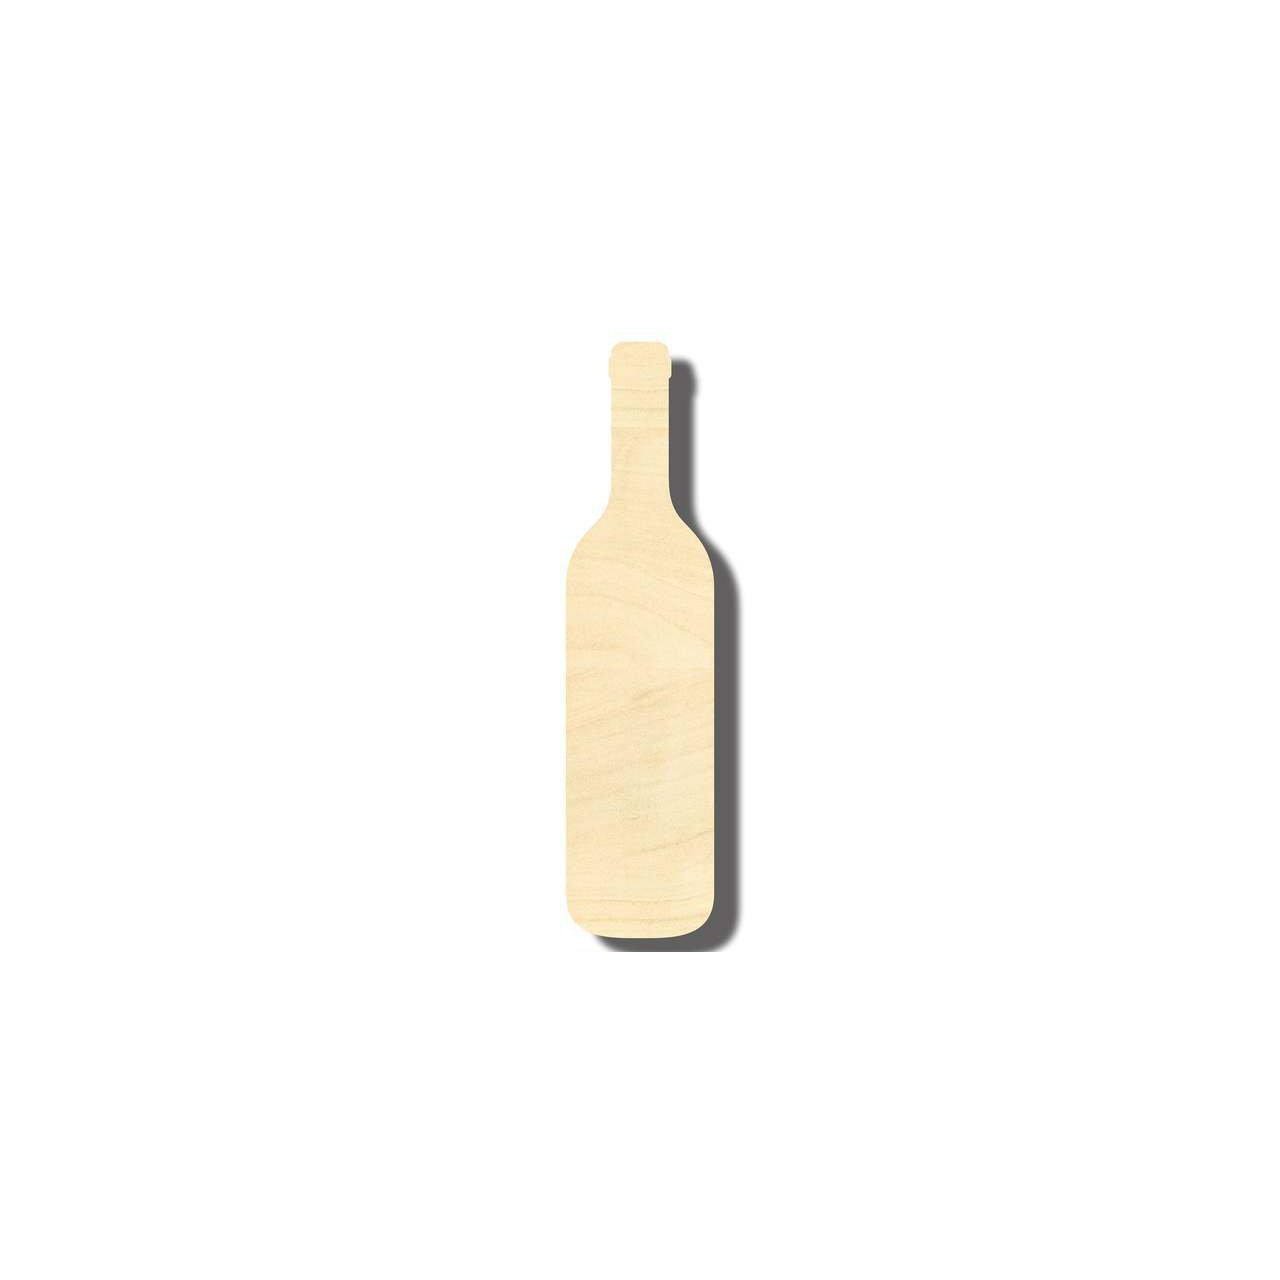 Unfinished Wood Glue Bottle Shape - Craft - up to 36 DIY 4 / 1/2 